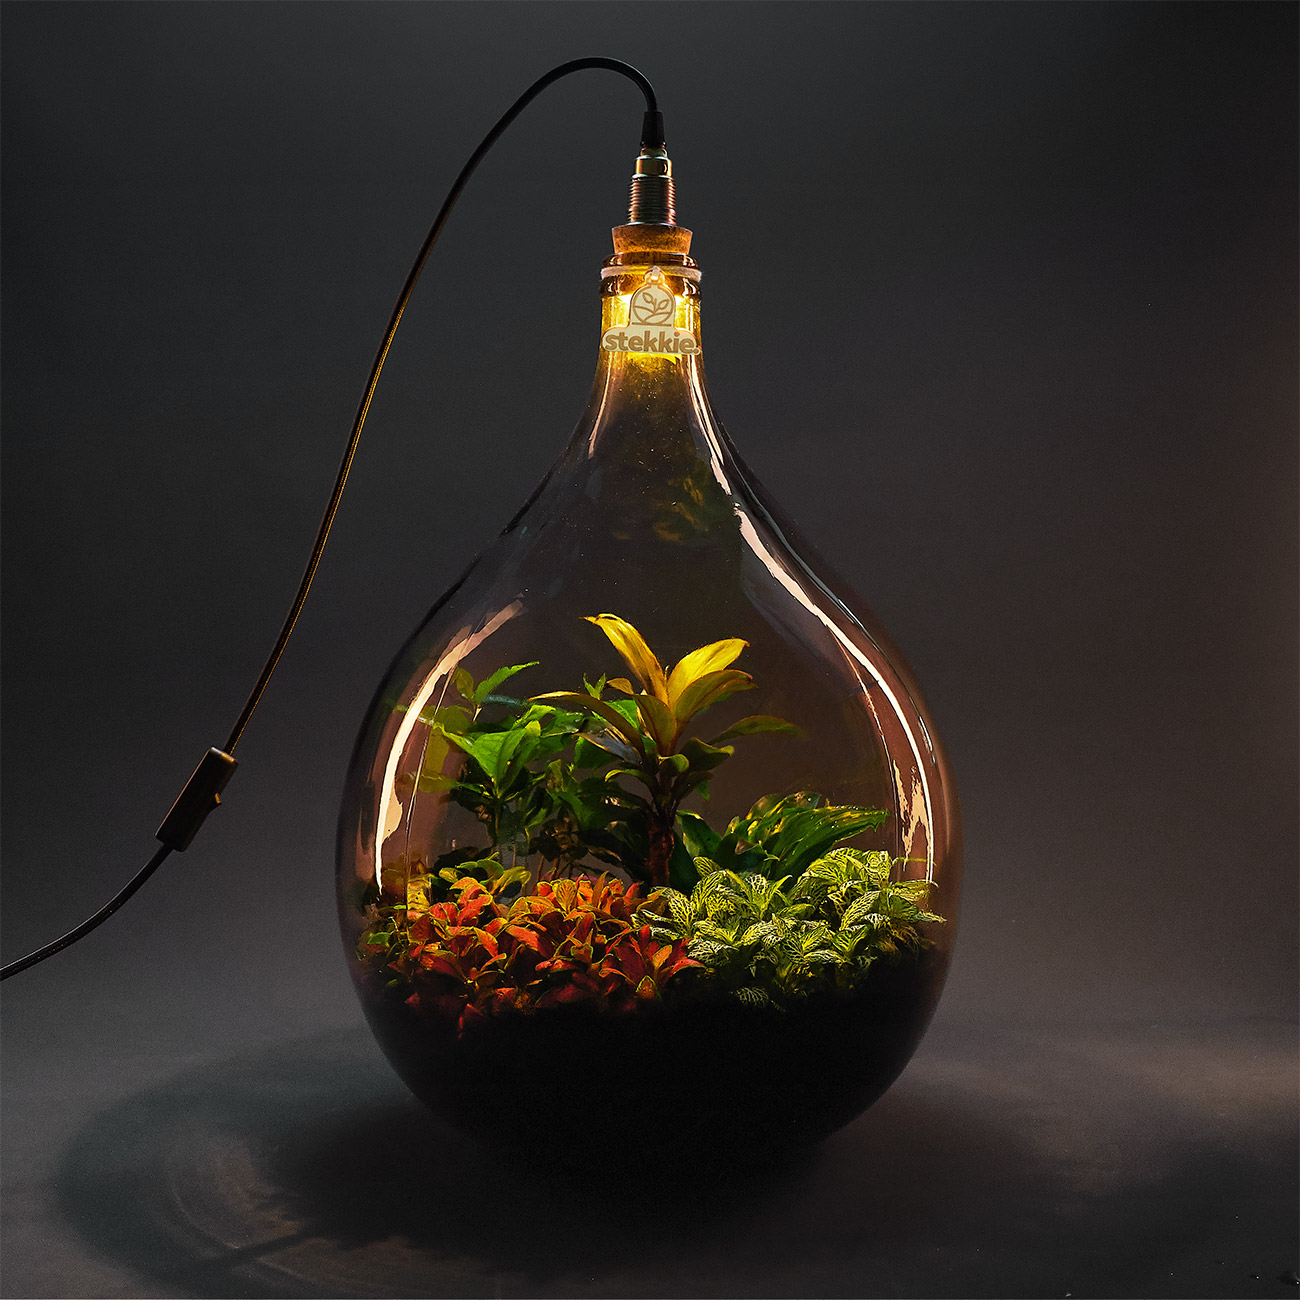 Planten in een grote glazen fles die sfeervol worden verlicht door een lamp op de fles